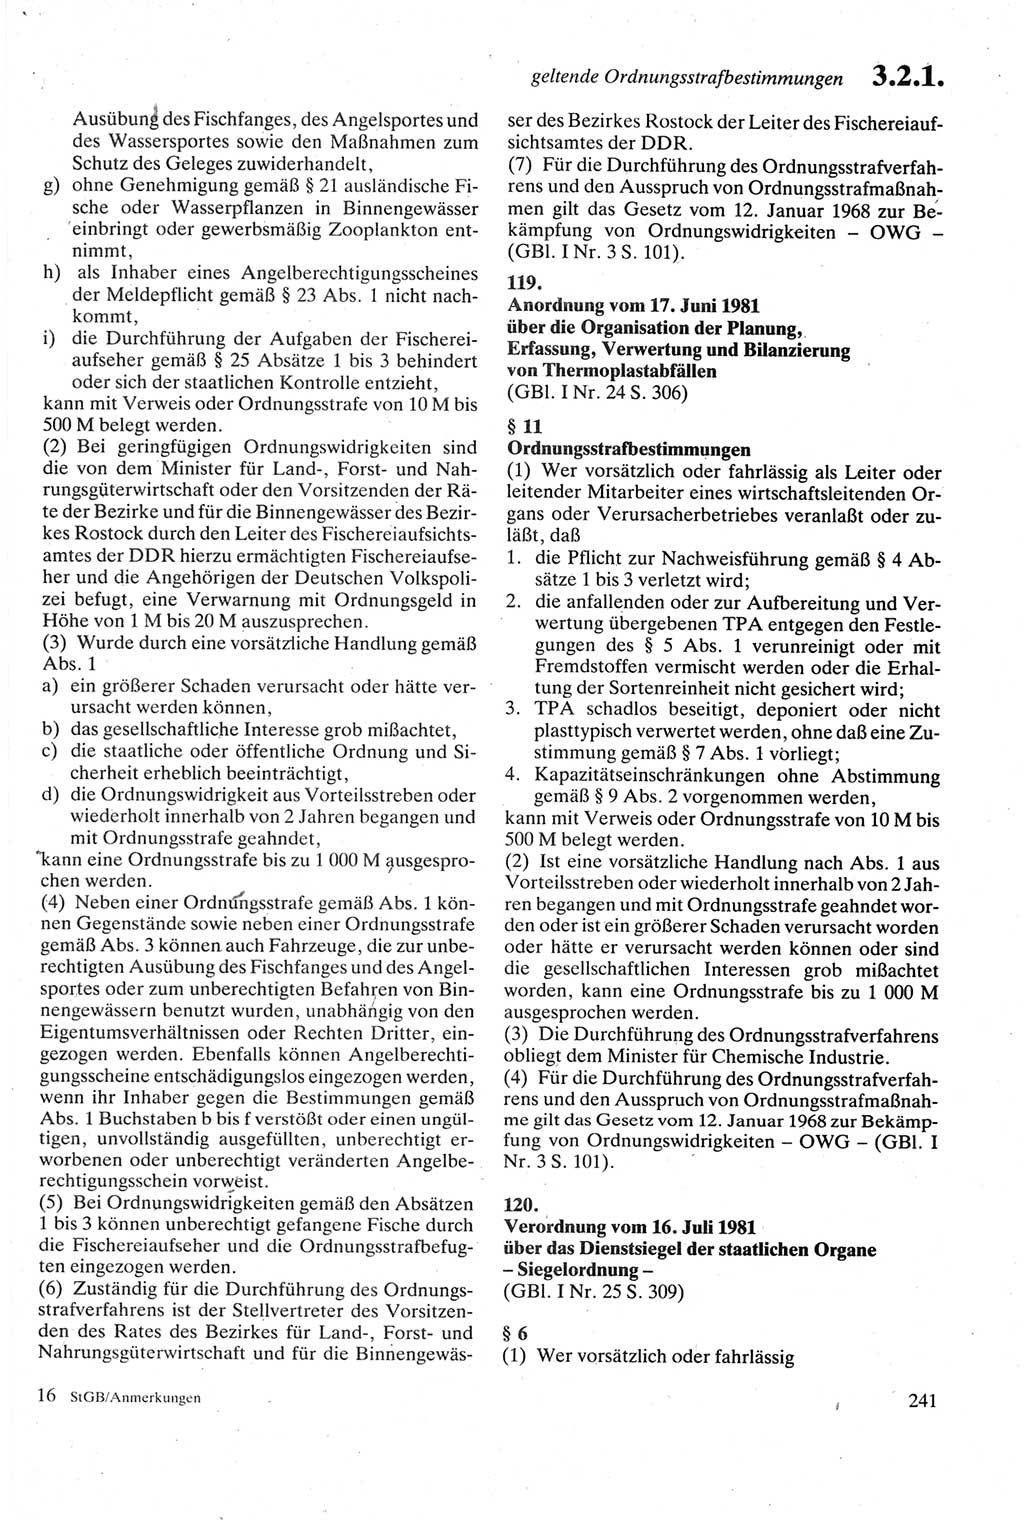 Strafgesetzbuch (StGB) der Deutschen Demokratischen Republik (DDR) sowie angrenzende Gesetze und Bestimmungen 1979, Seite 241 (StGB DDR Ges. Best. 1979, S. 241)